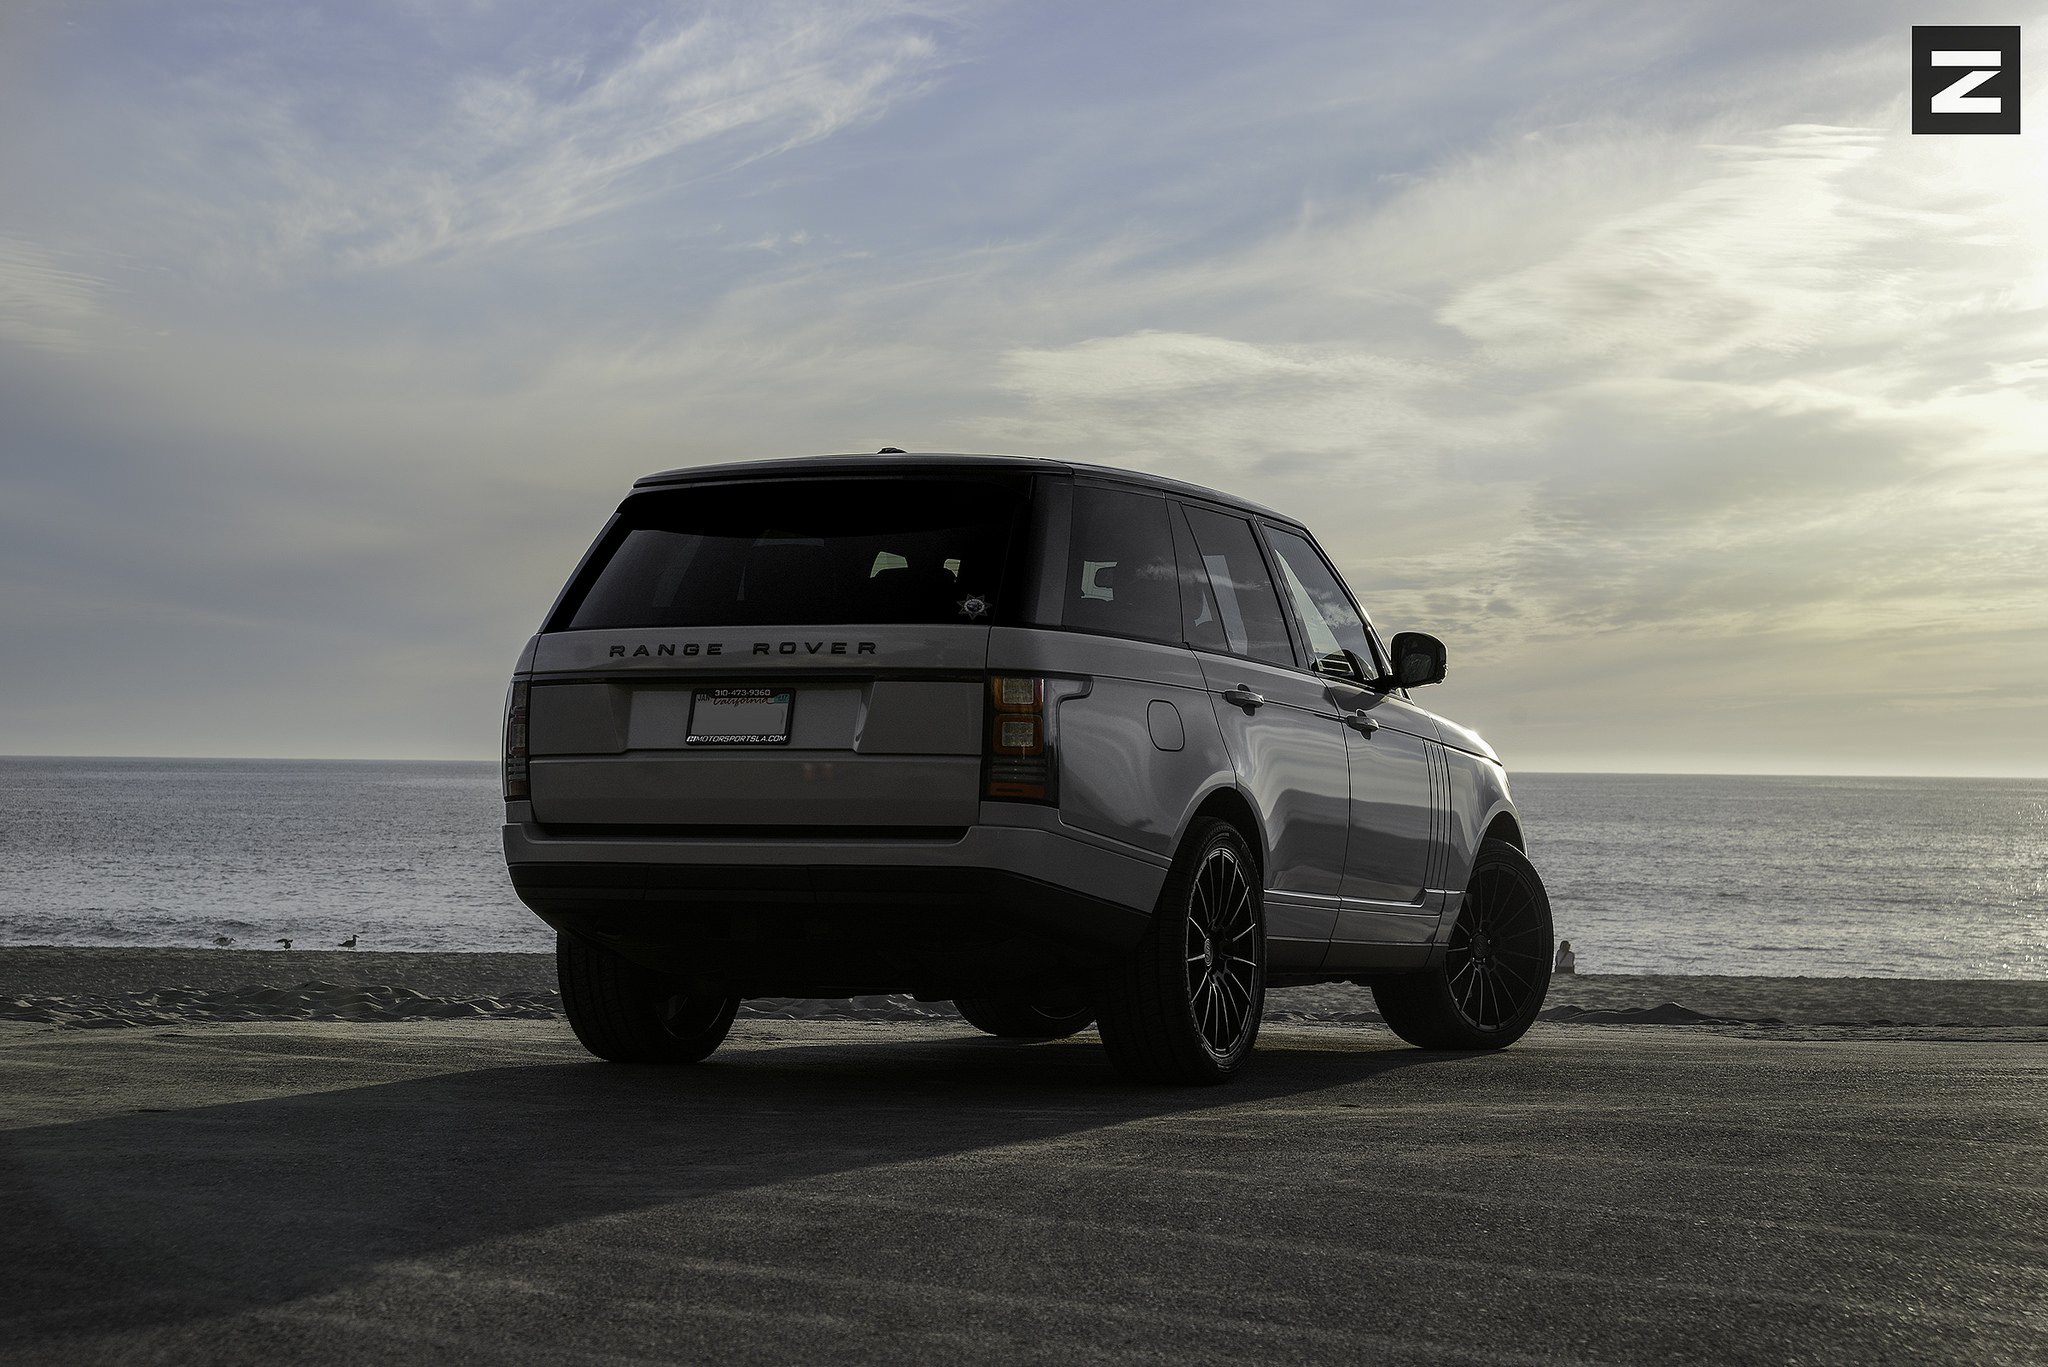 Custom White Range Rover Rear Diffuser - Photo by Zito Wheels